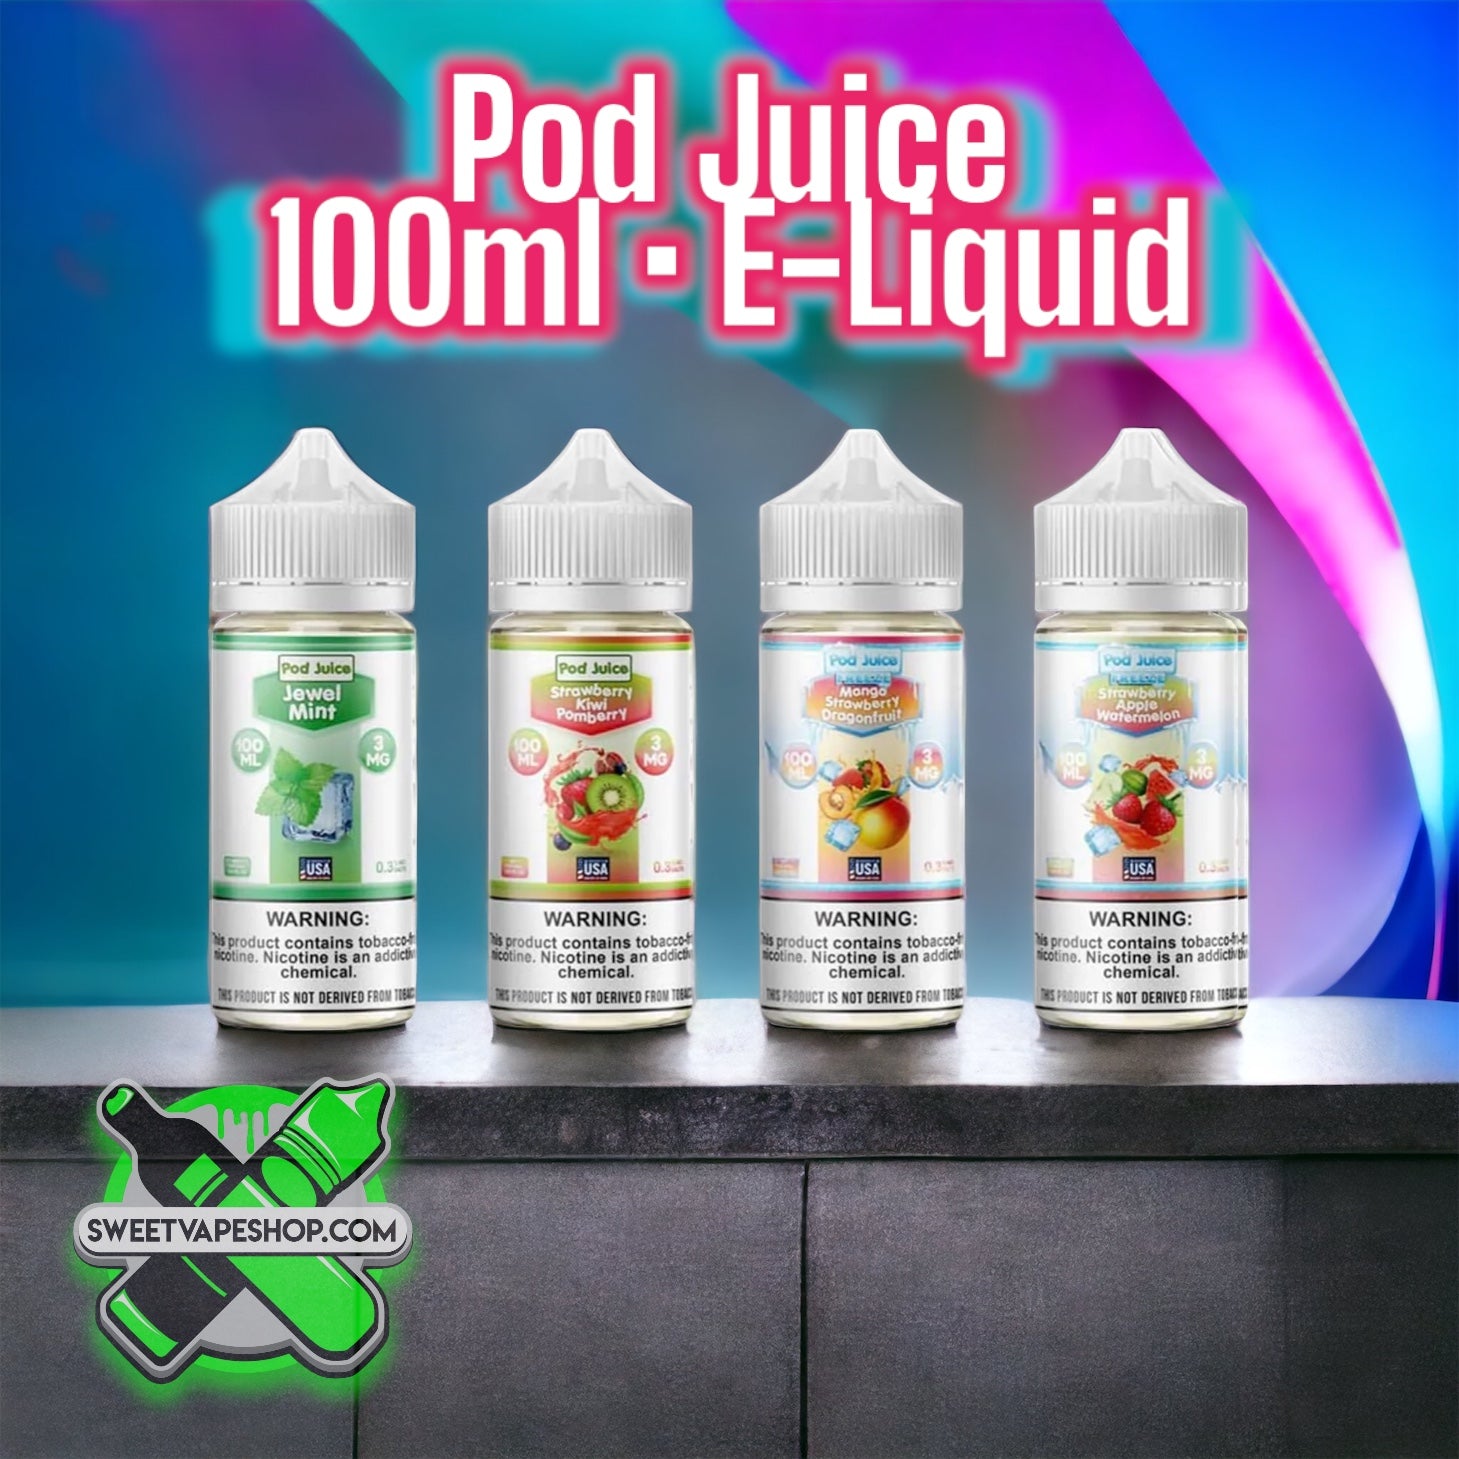 Pod Juice - 100ml E-Juice